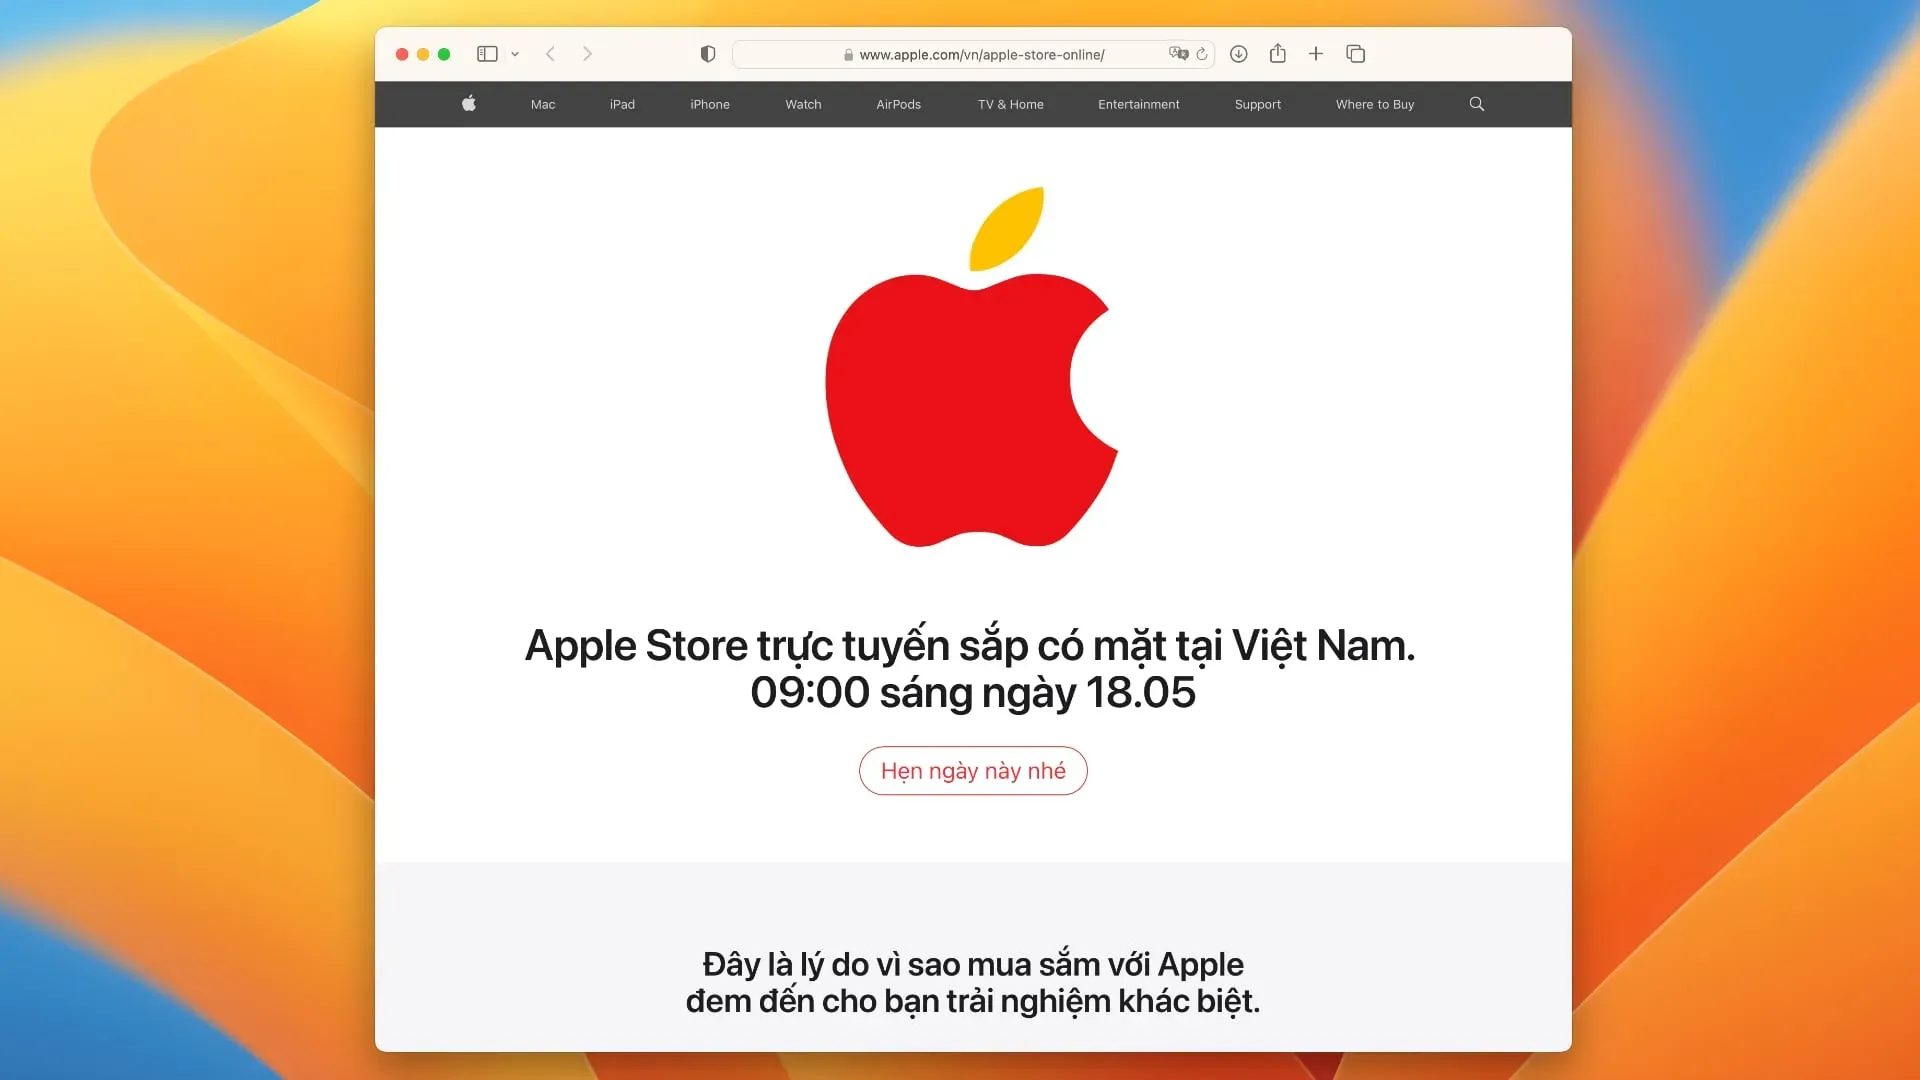 Pagina di anteprima di Apple che annuncia il negozio online in Vietnam